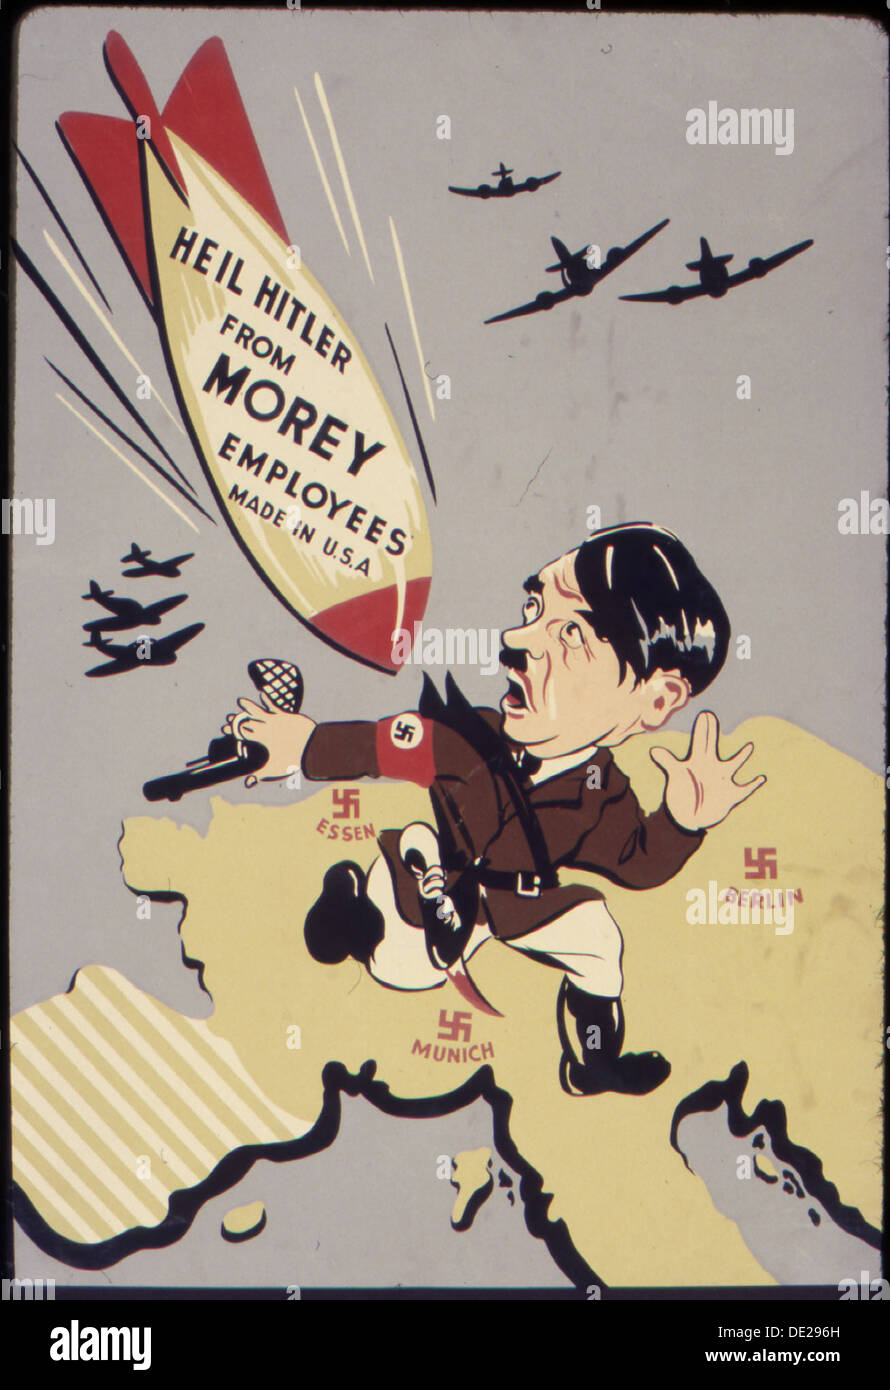 Heil Hitler da Morey dipendenti. Made in U.S.A 534886 Foto Stock